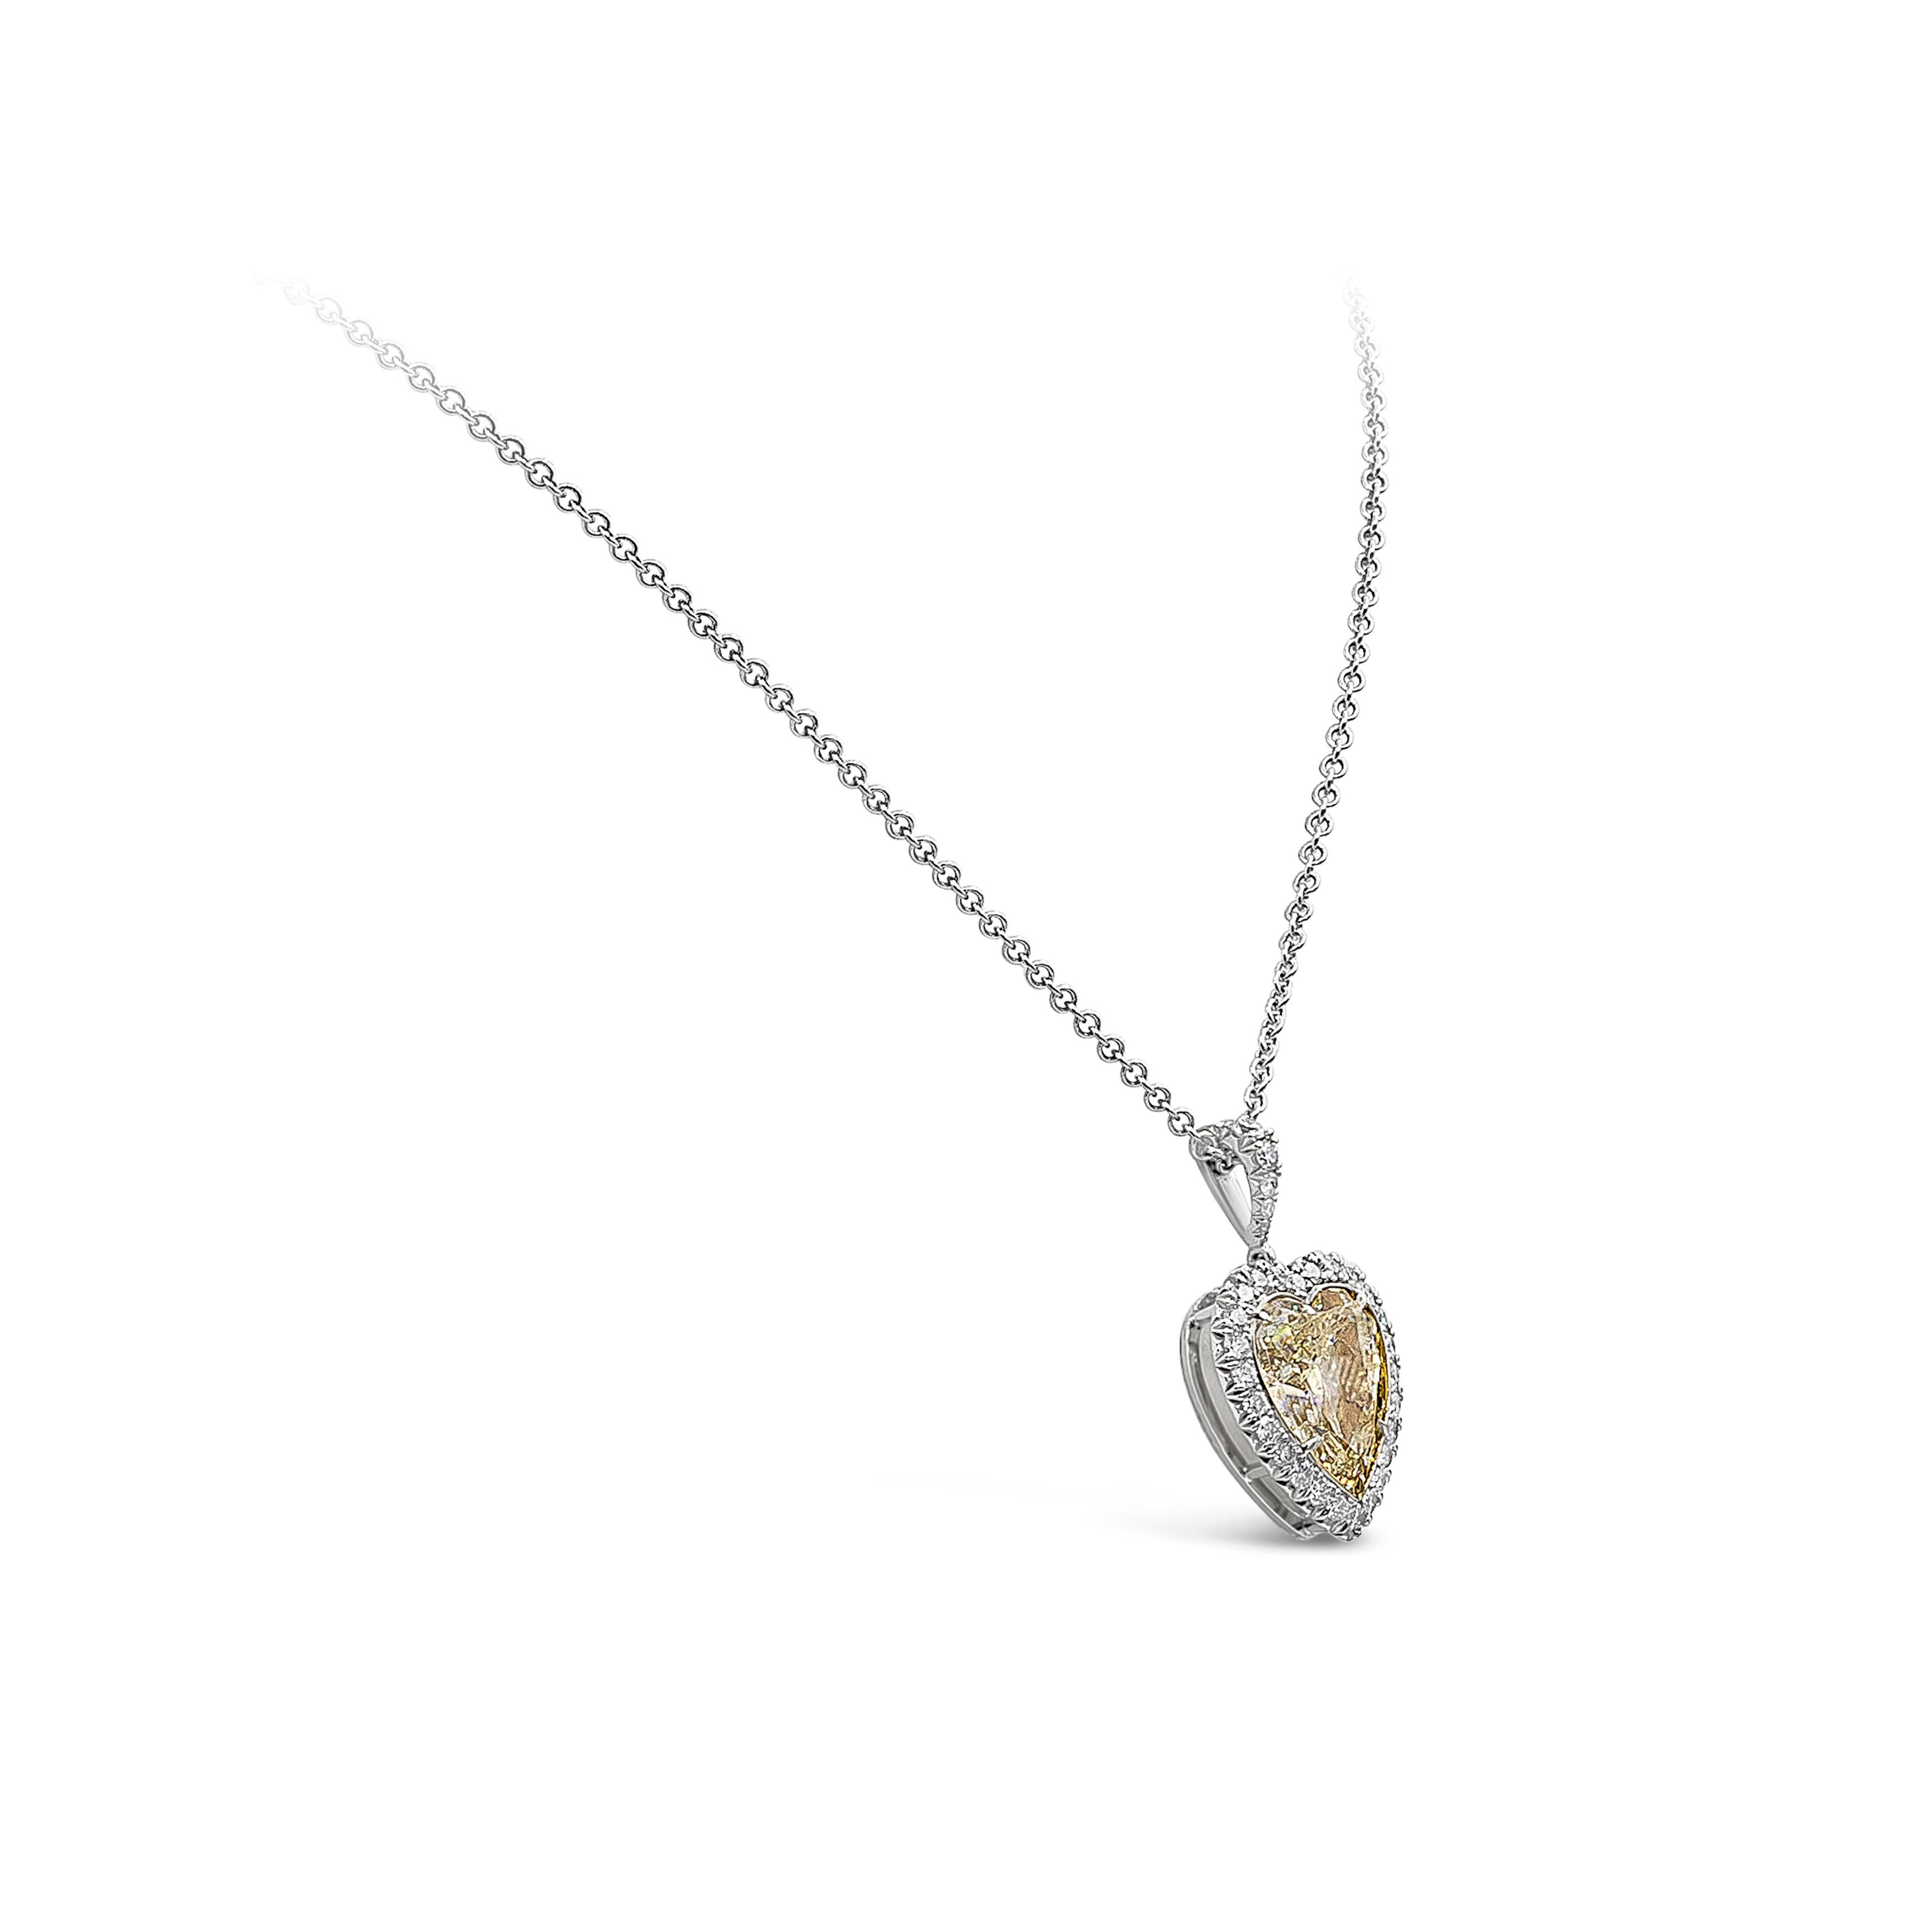 Collier pendentif bien travaillé et vibrant mettant en valeur un diamant jaune de 8,07 carats certifié par le GIA comme étant de couleur Y-Z, serti dans une monture en or jaune 18k à cinq griffes. Entouré d'une seule rangée de diamants ronds de